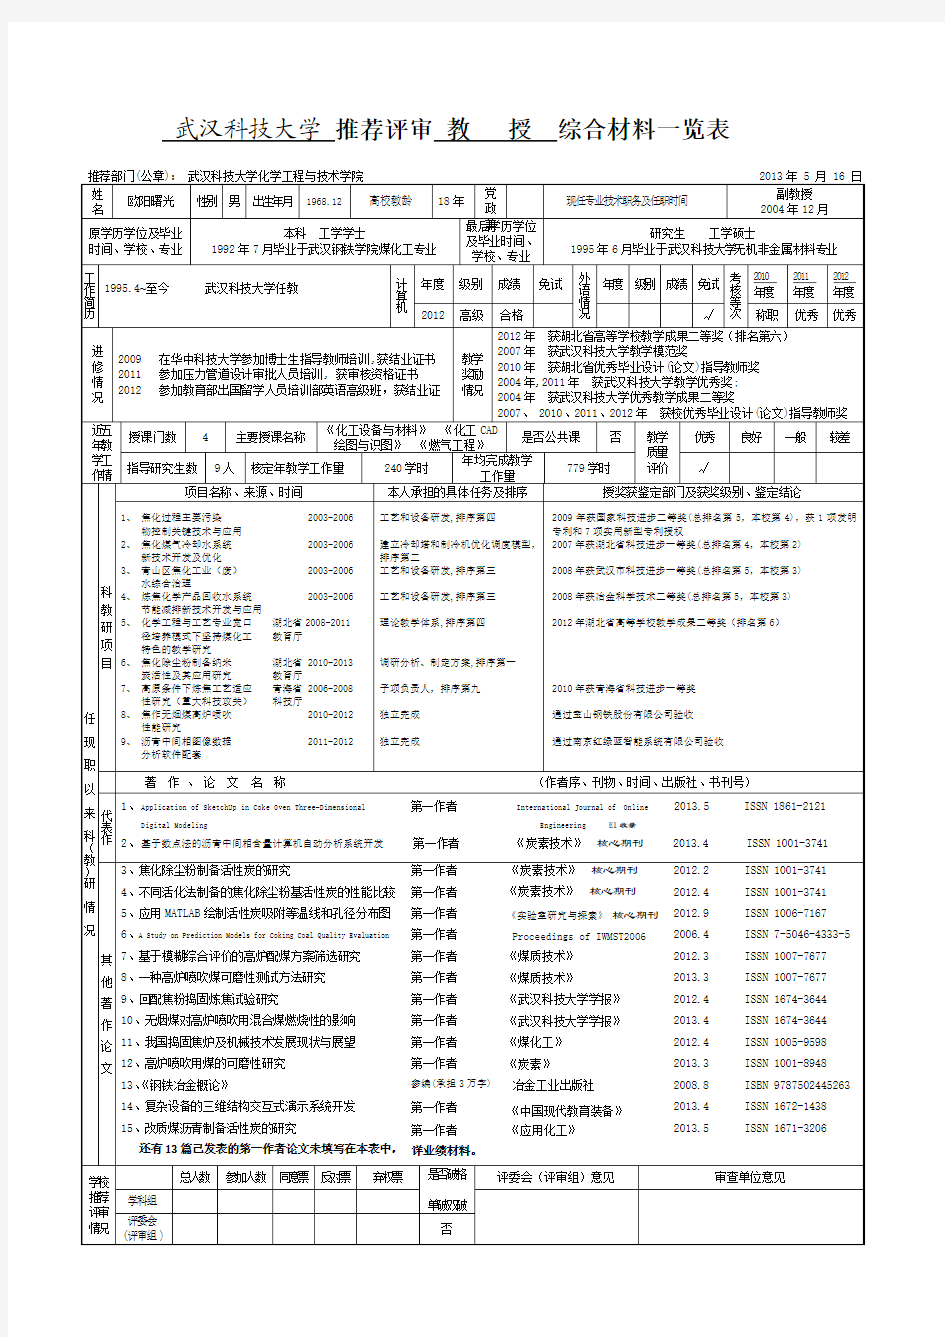 武汉科技大学推荐评审副教授综合材料一览表